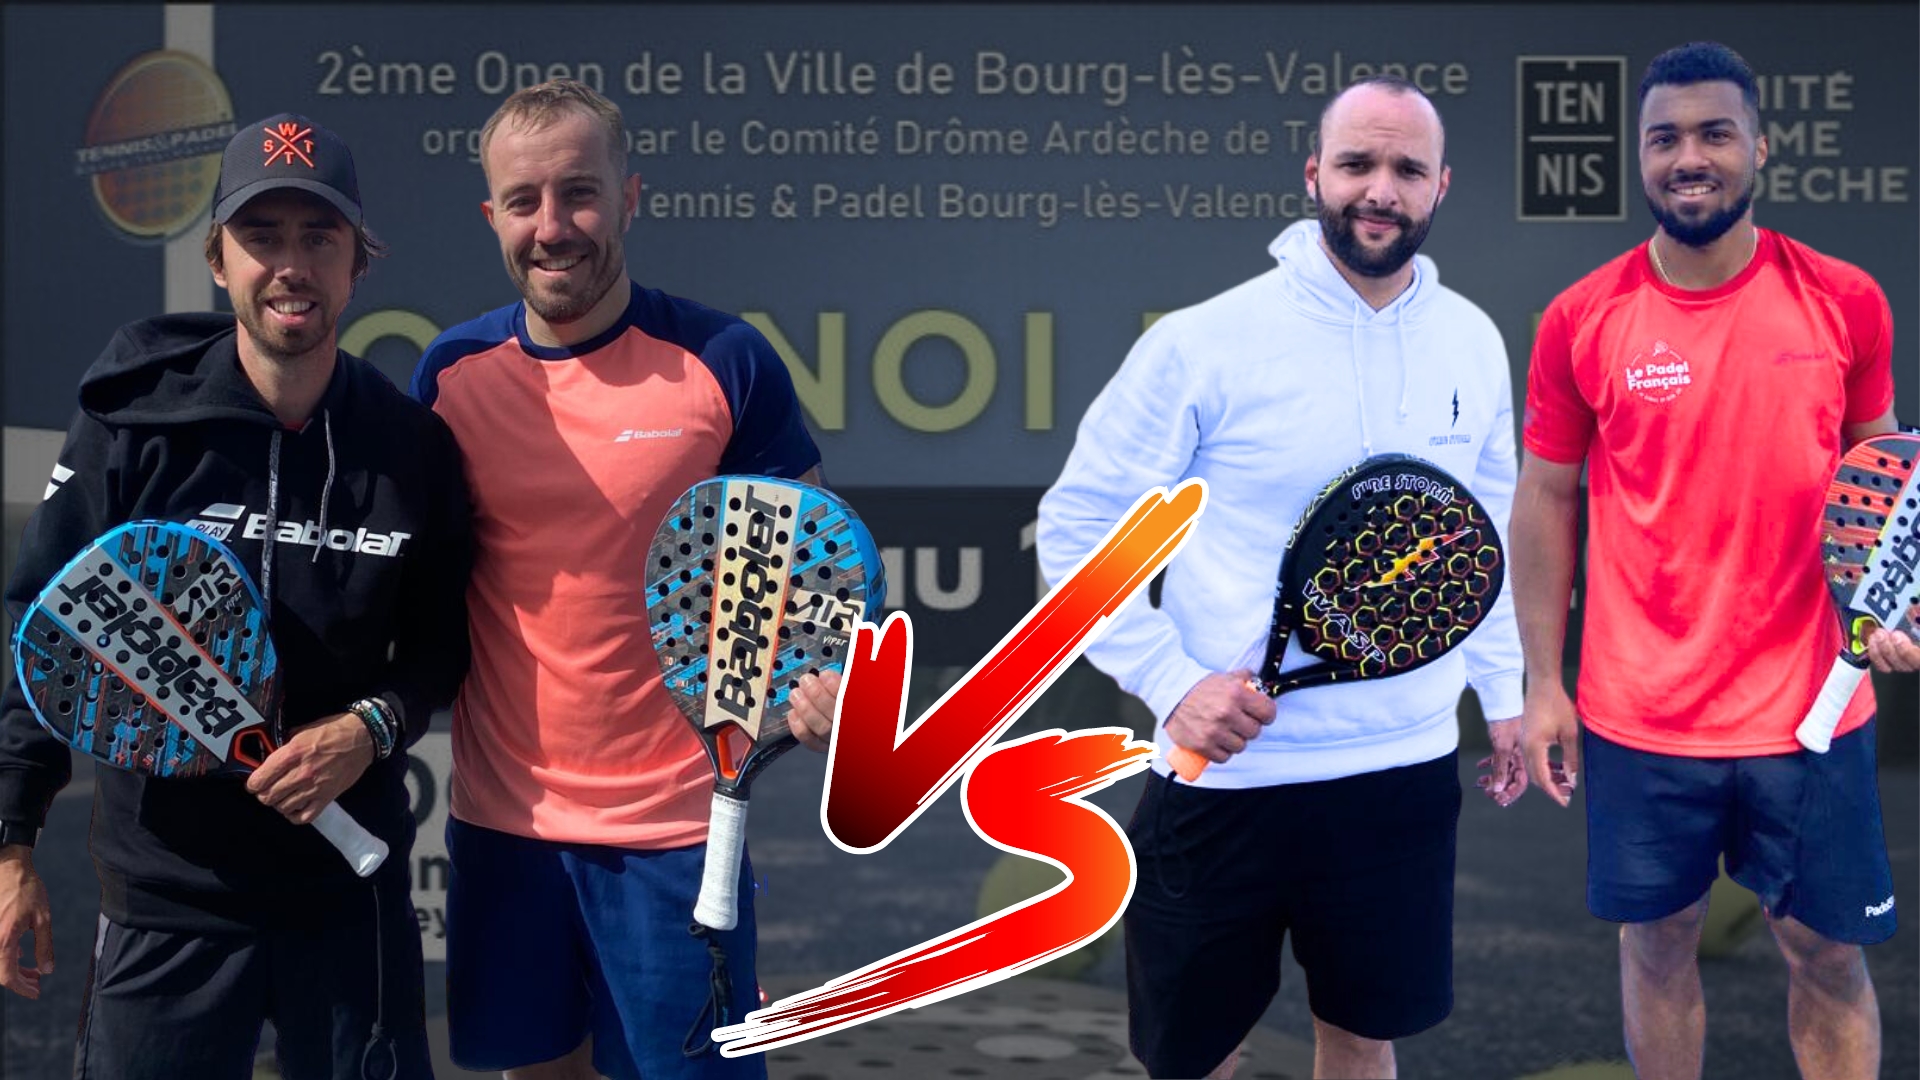 Finale open Bourg-Lès-Valence: Vincent / Authier vs Sanchez / Rouanet